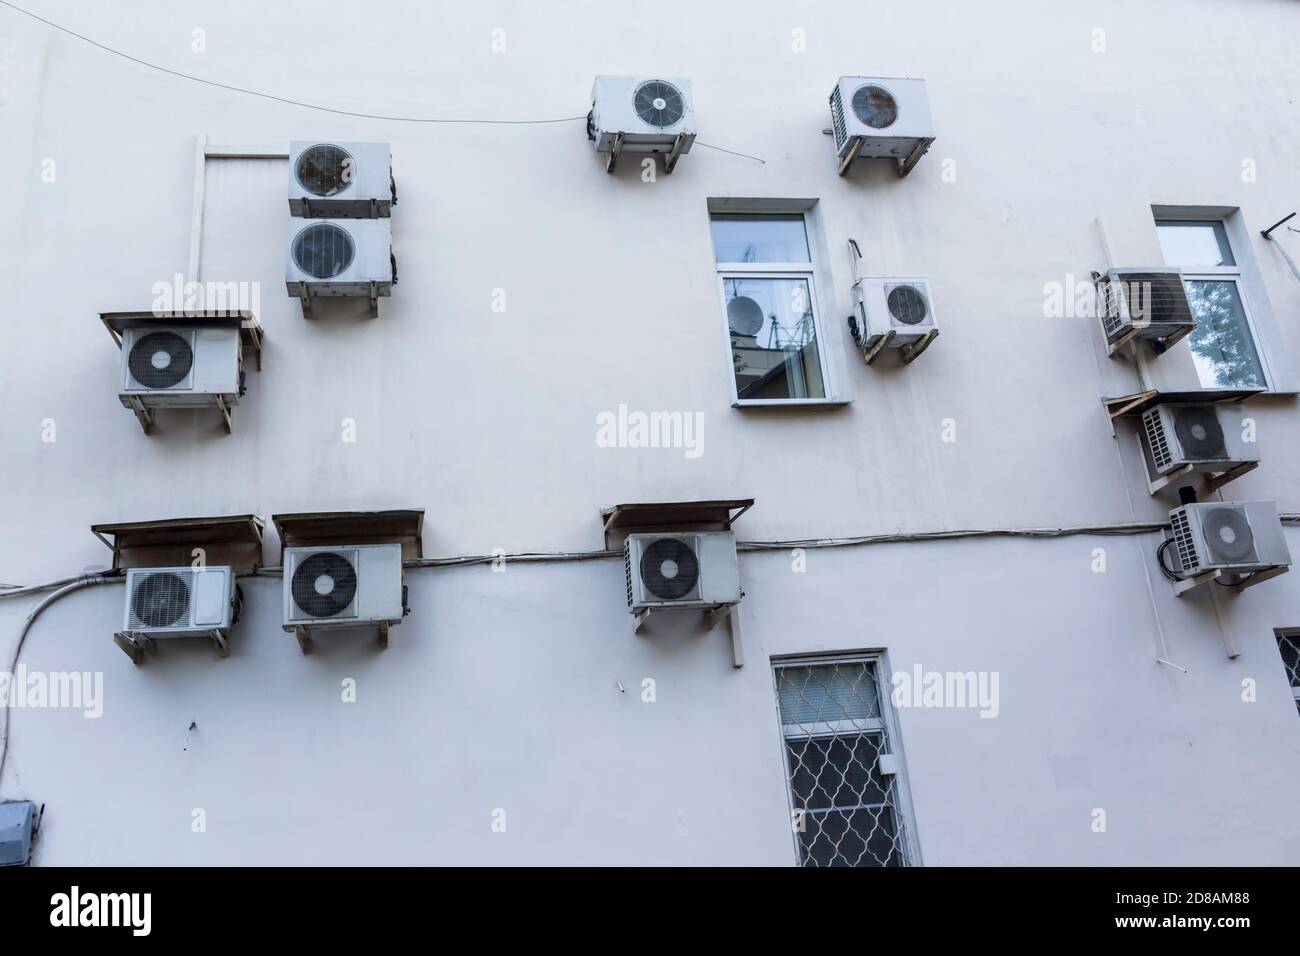 Condizionatori d'aria sul muro della casa dove si trovano gli uffici. Intonaco bianco e contenitori delle unità esterne del sistema di ventilazione. Foto Stock